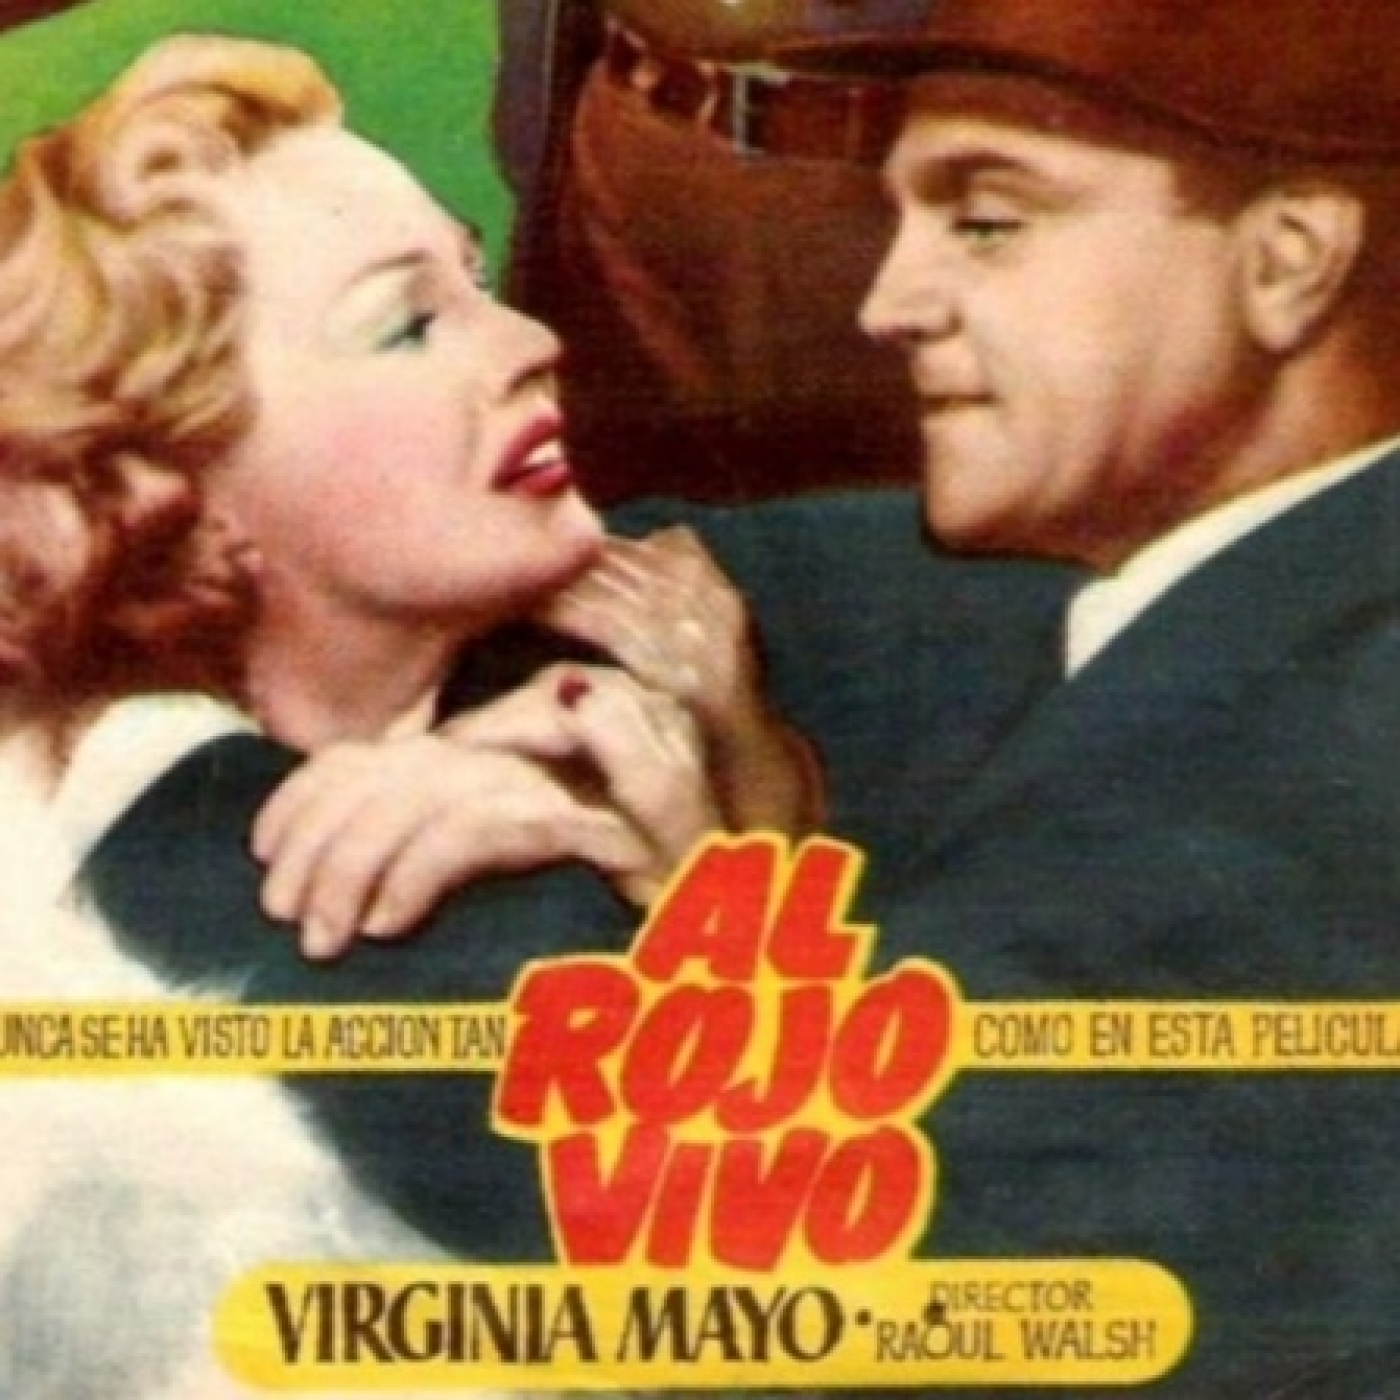 Peticiones Oyentes - Al Rojo vivo - 1949